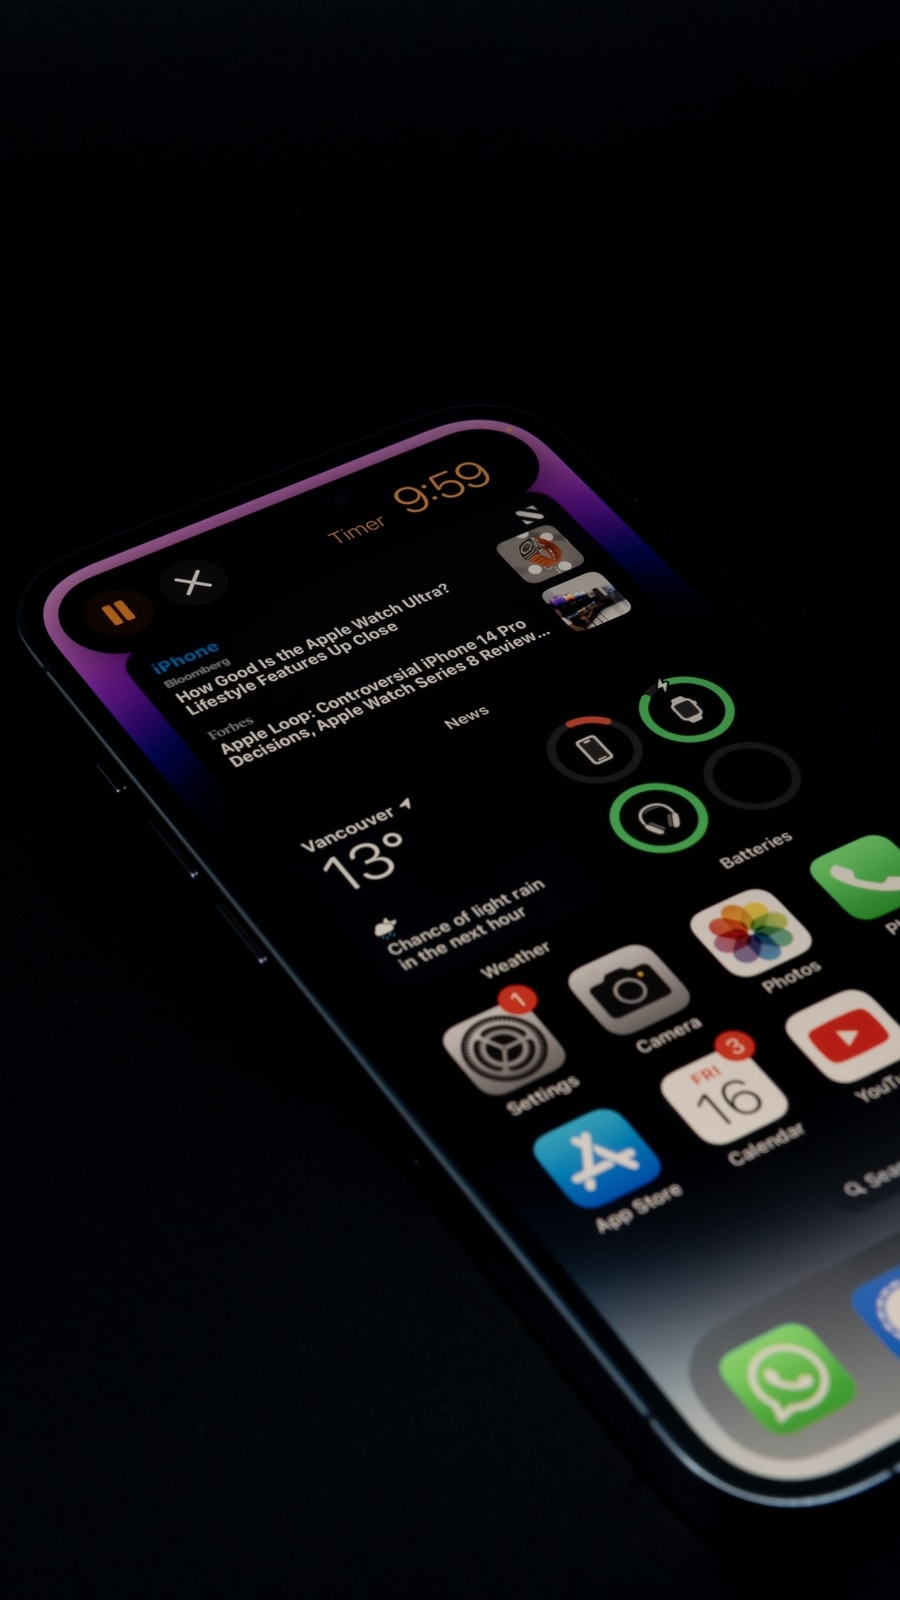 Jailbreak app brings watchOS look to iPhone